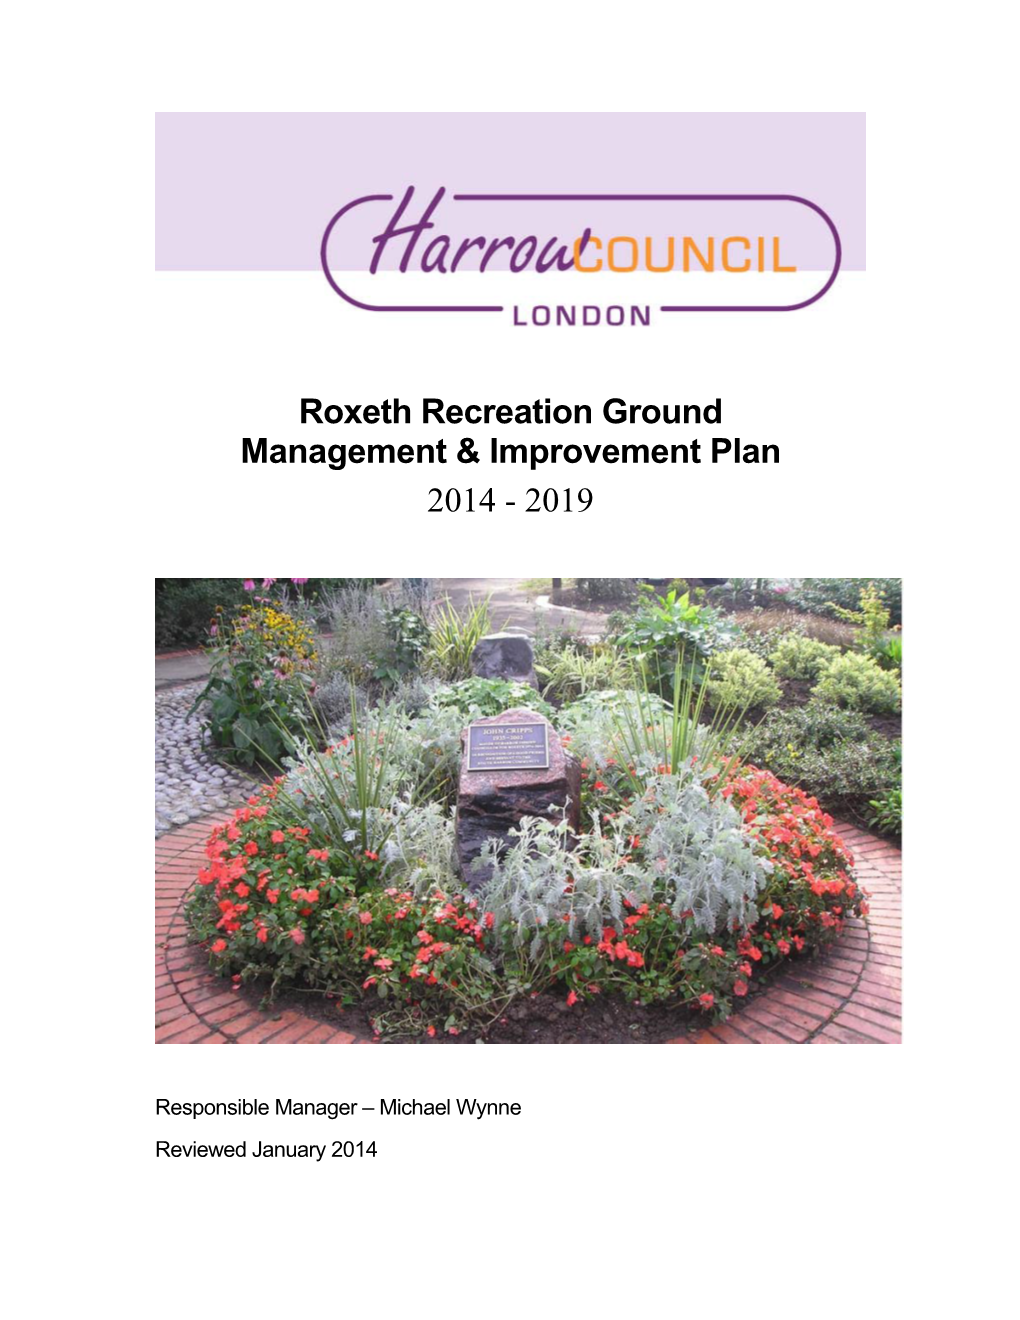 Roxeth Recreation Ground Management & Improvement Plan 2014 - 2019